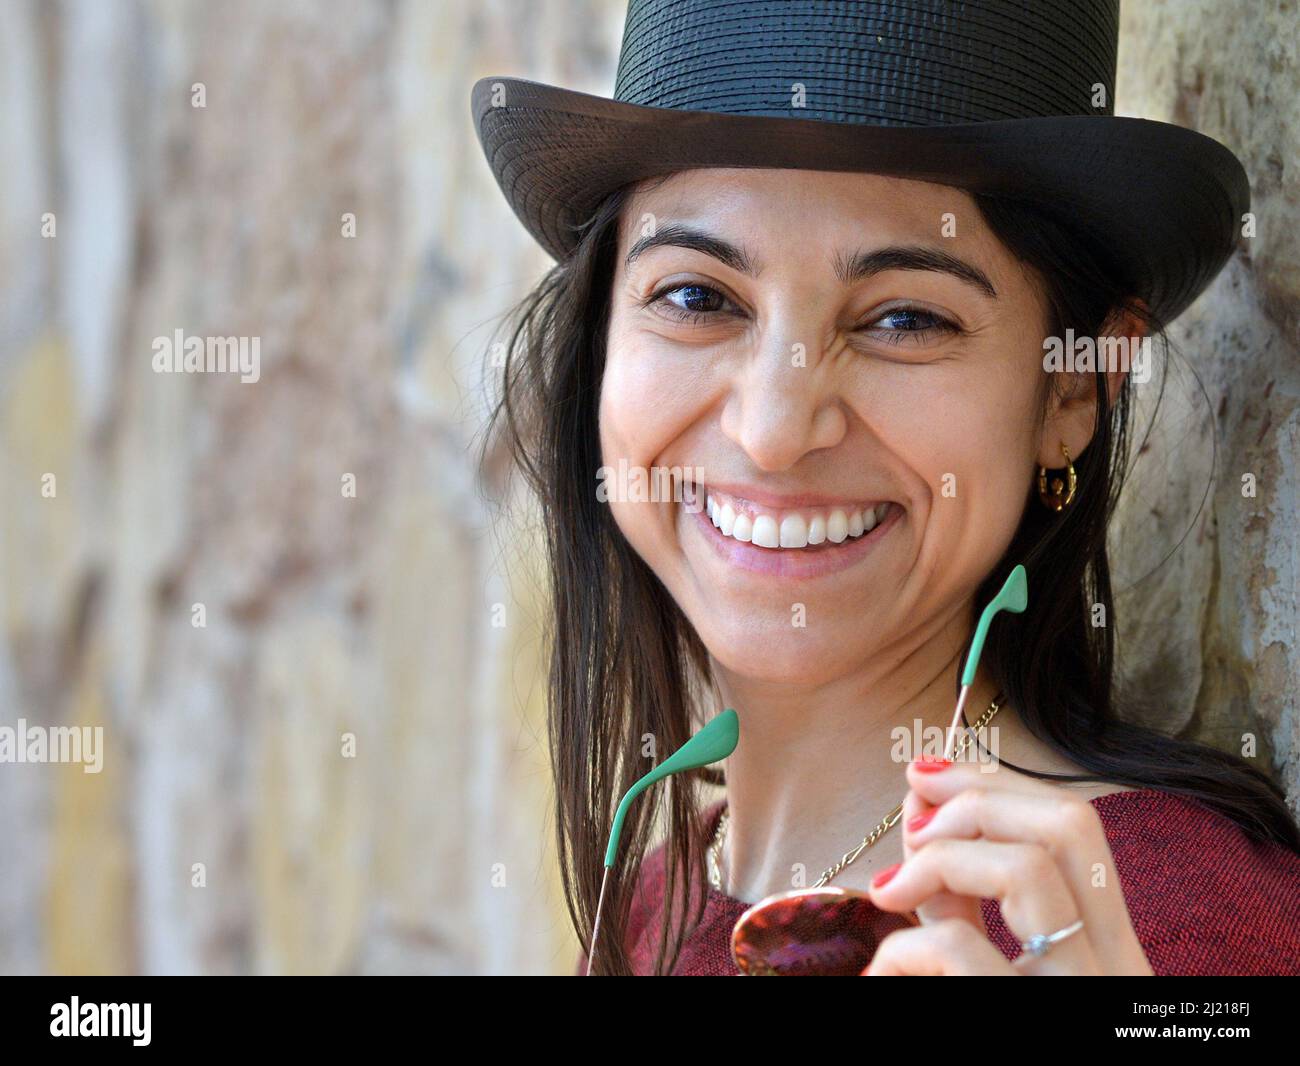 Die junge, schöne, charmante Latina-Frau trägt einen schwarzen Zylinderhut, hält eine Sonnenbrille und lächelt den Betrachter vor einem Hintergrund aus einer Steinwand an. Stockfoto